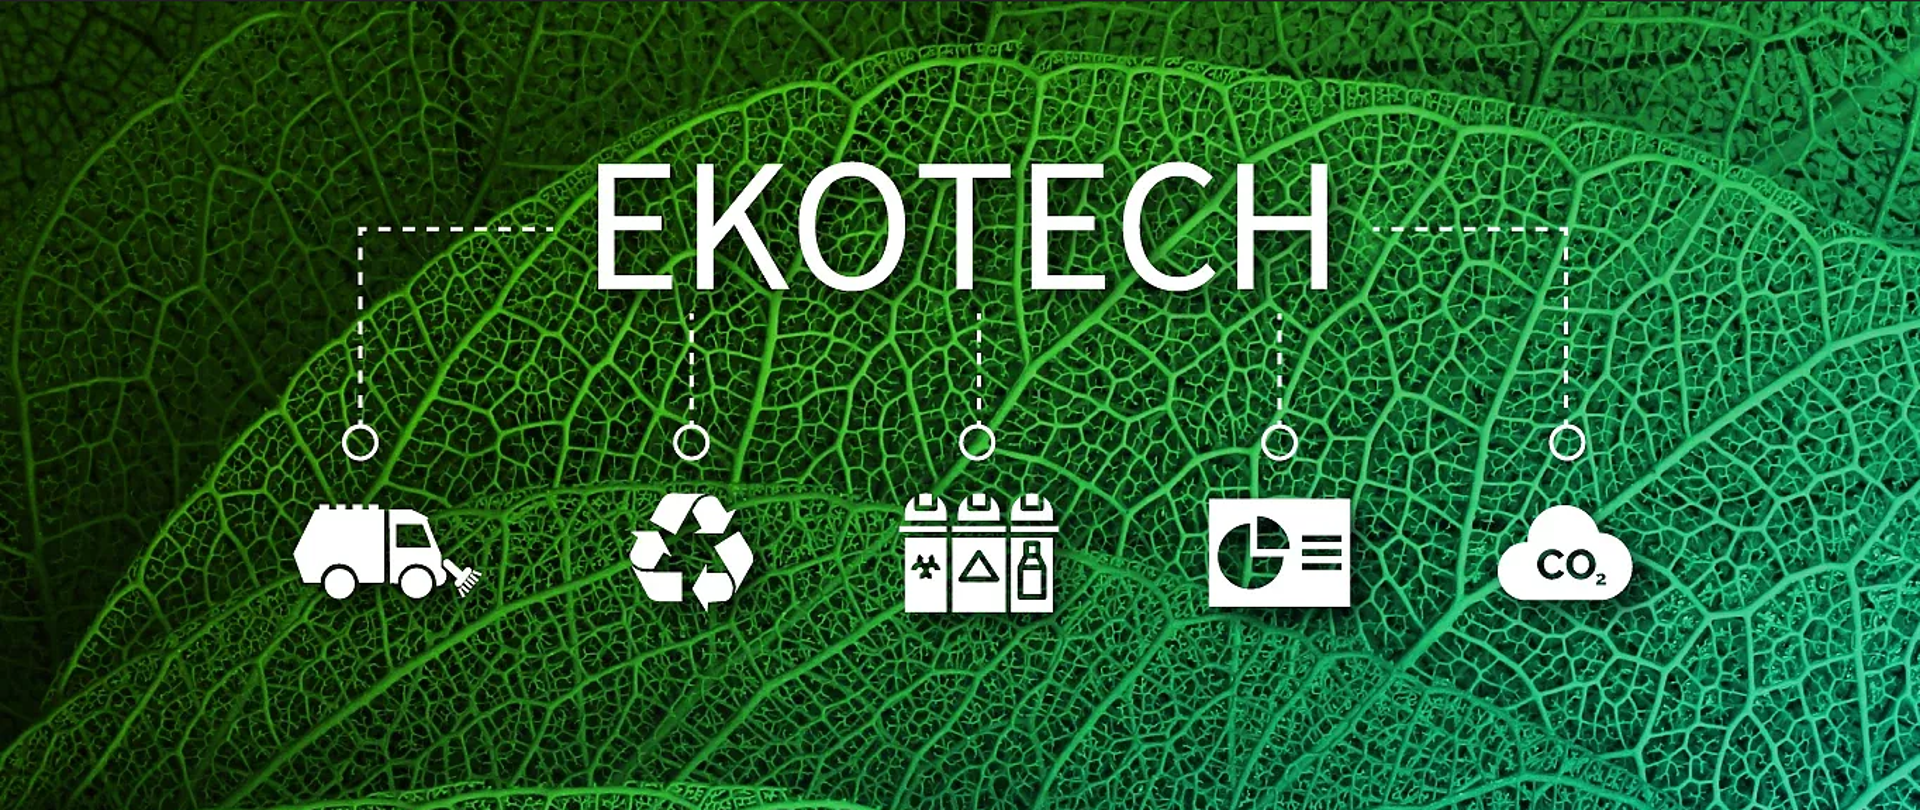 Baner EKOTECH, zielony liść, umieszczone białe ikony symbolizujące ochronę środowiska